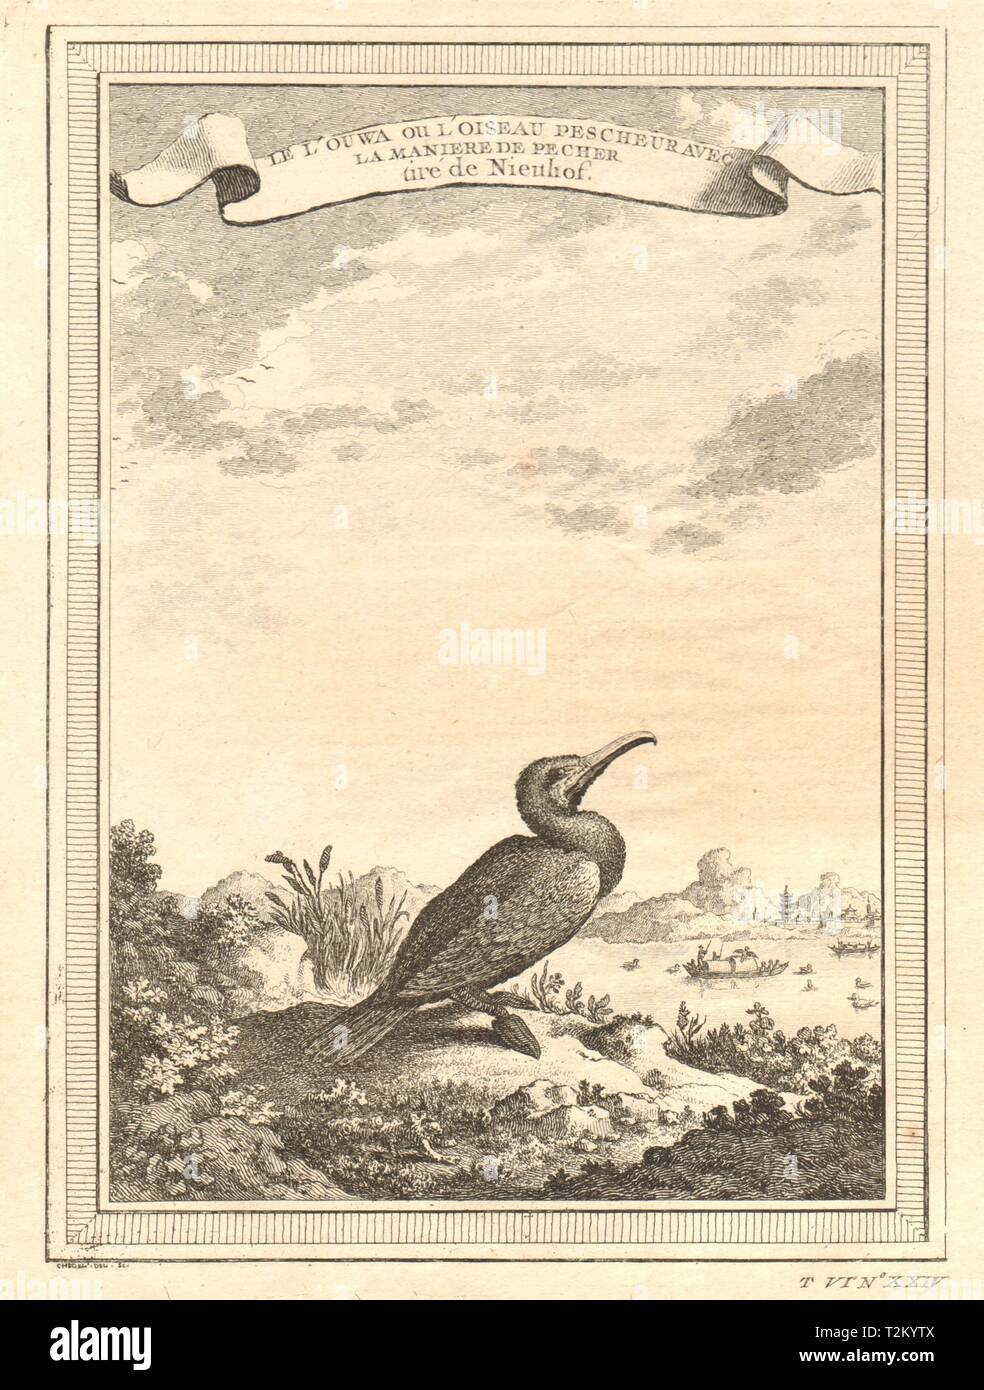 La Chine. Le cormoran ou oiseau de pêche, avec la méthode de pêche 1748 imprimer Banque D'Images